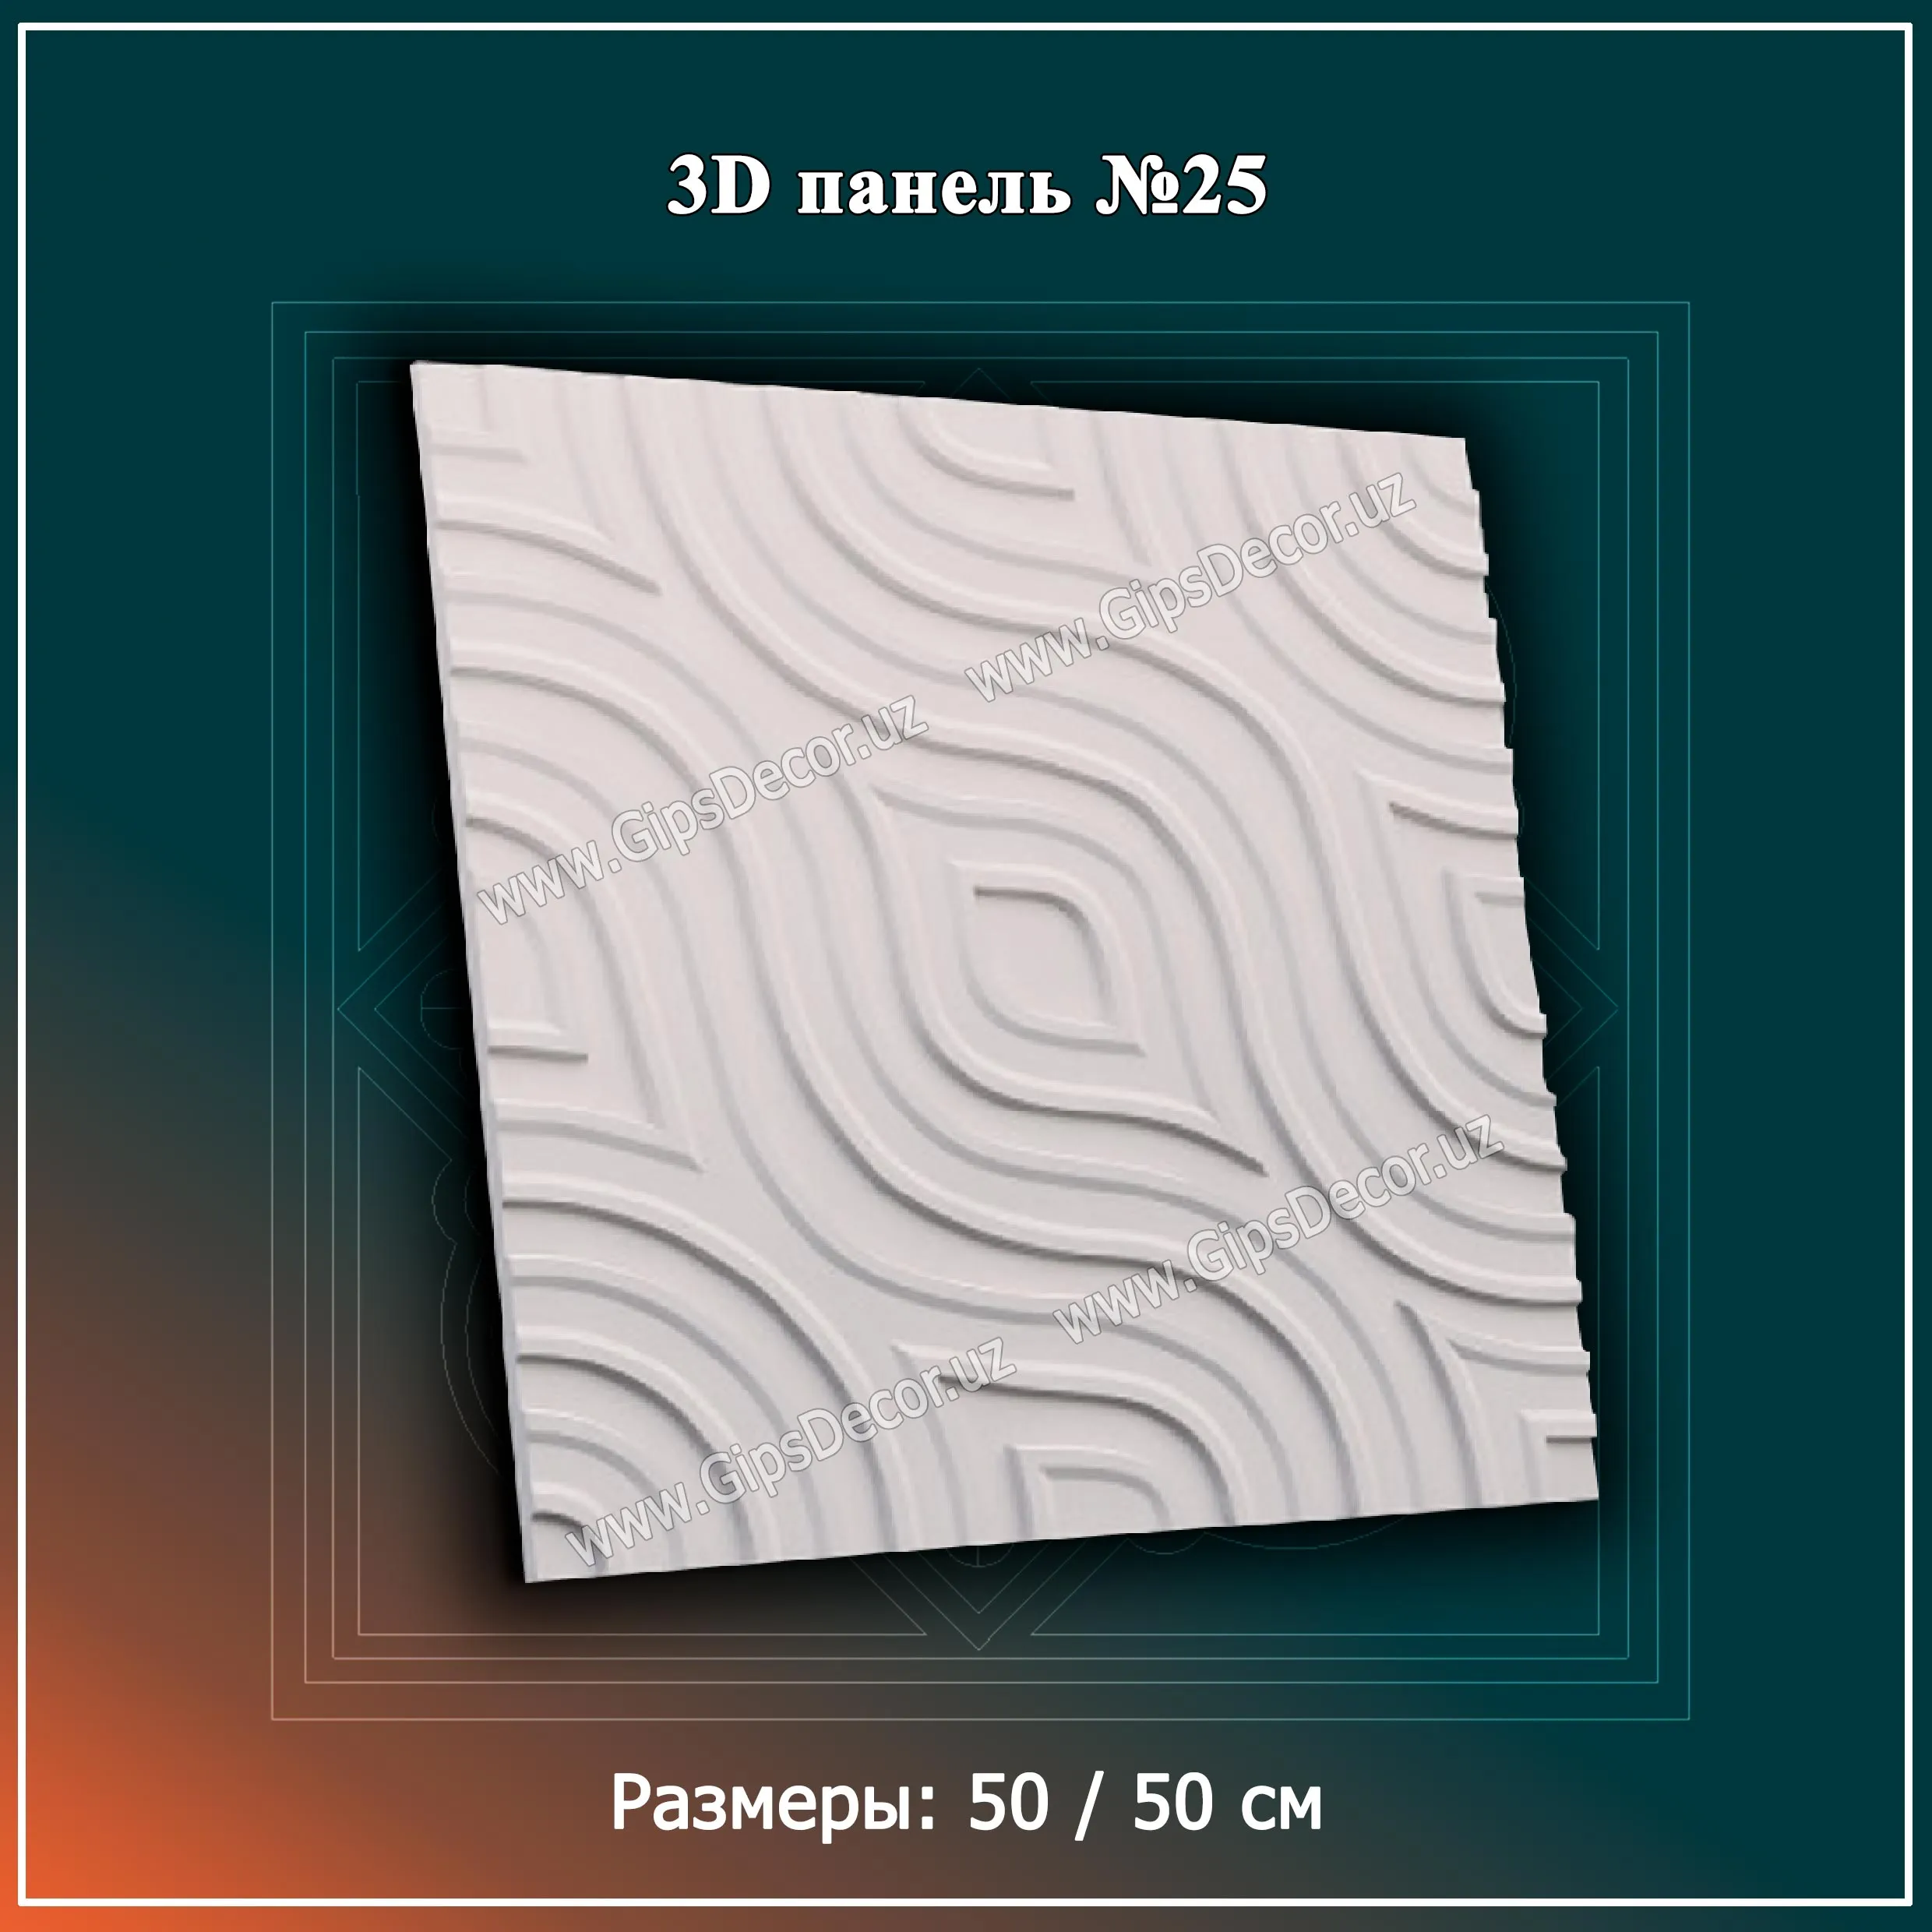 3D Панель №25 Размеры: 50 / 50 см#1